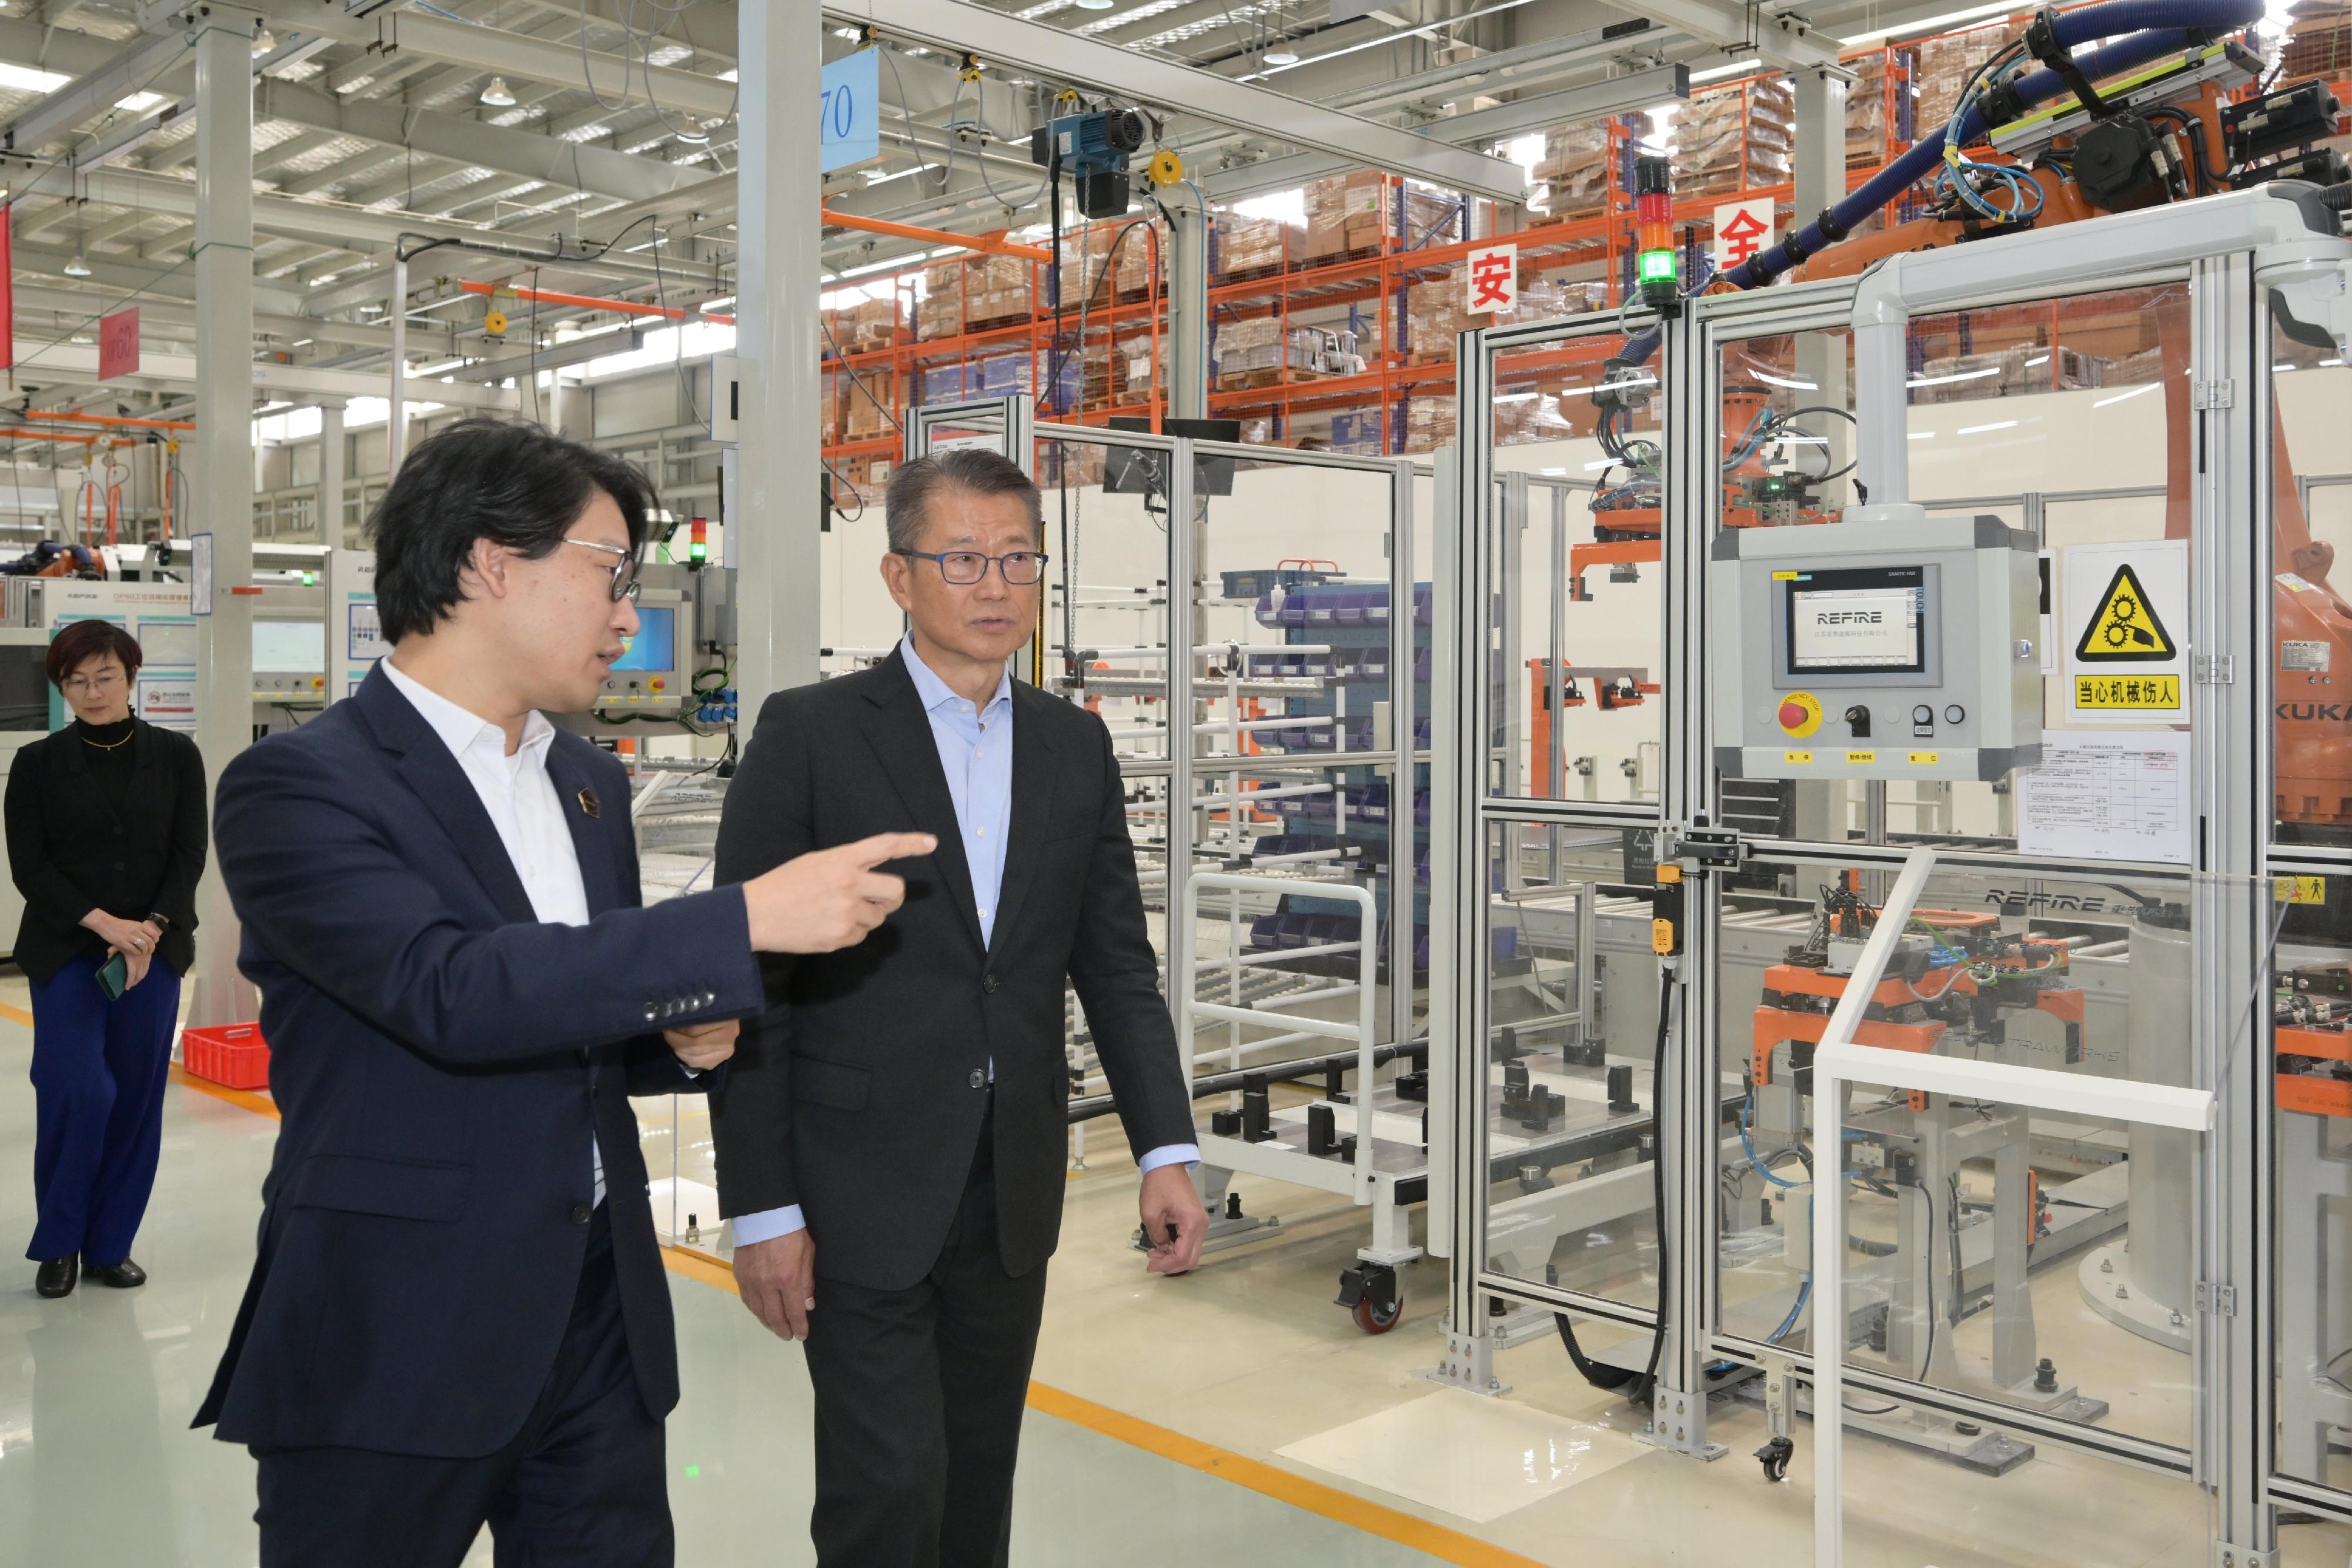 财政司司长陈茂波今日（四月十九日）结束访问苏州。图示陈茂波（右一）早上前往一家从事氢能科技的企业，并参观其厂房。